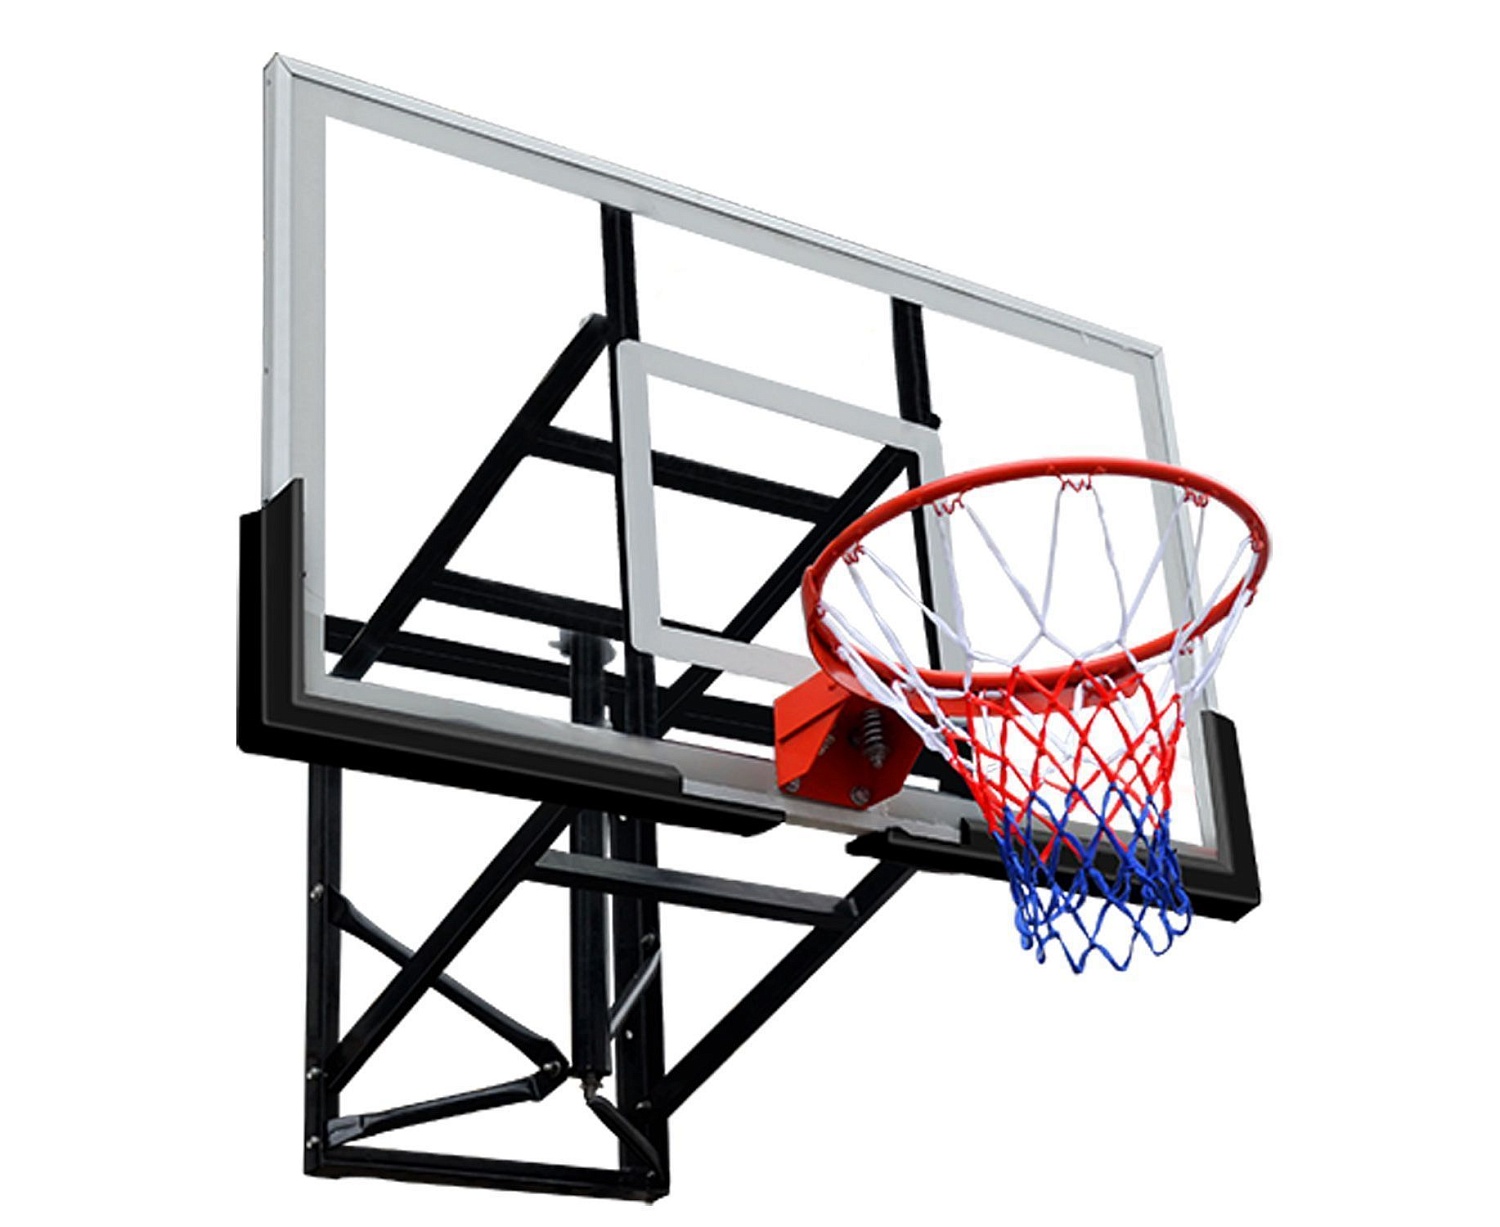 Баскетбольный щит DFC BOARD72G 180x105см стекло 10мм